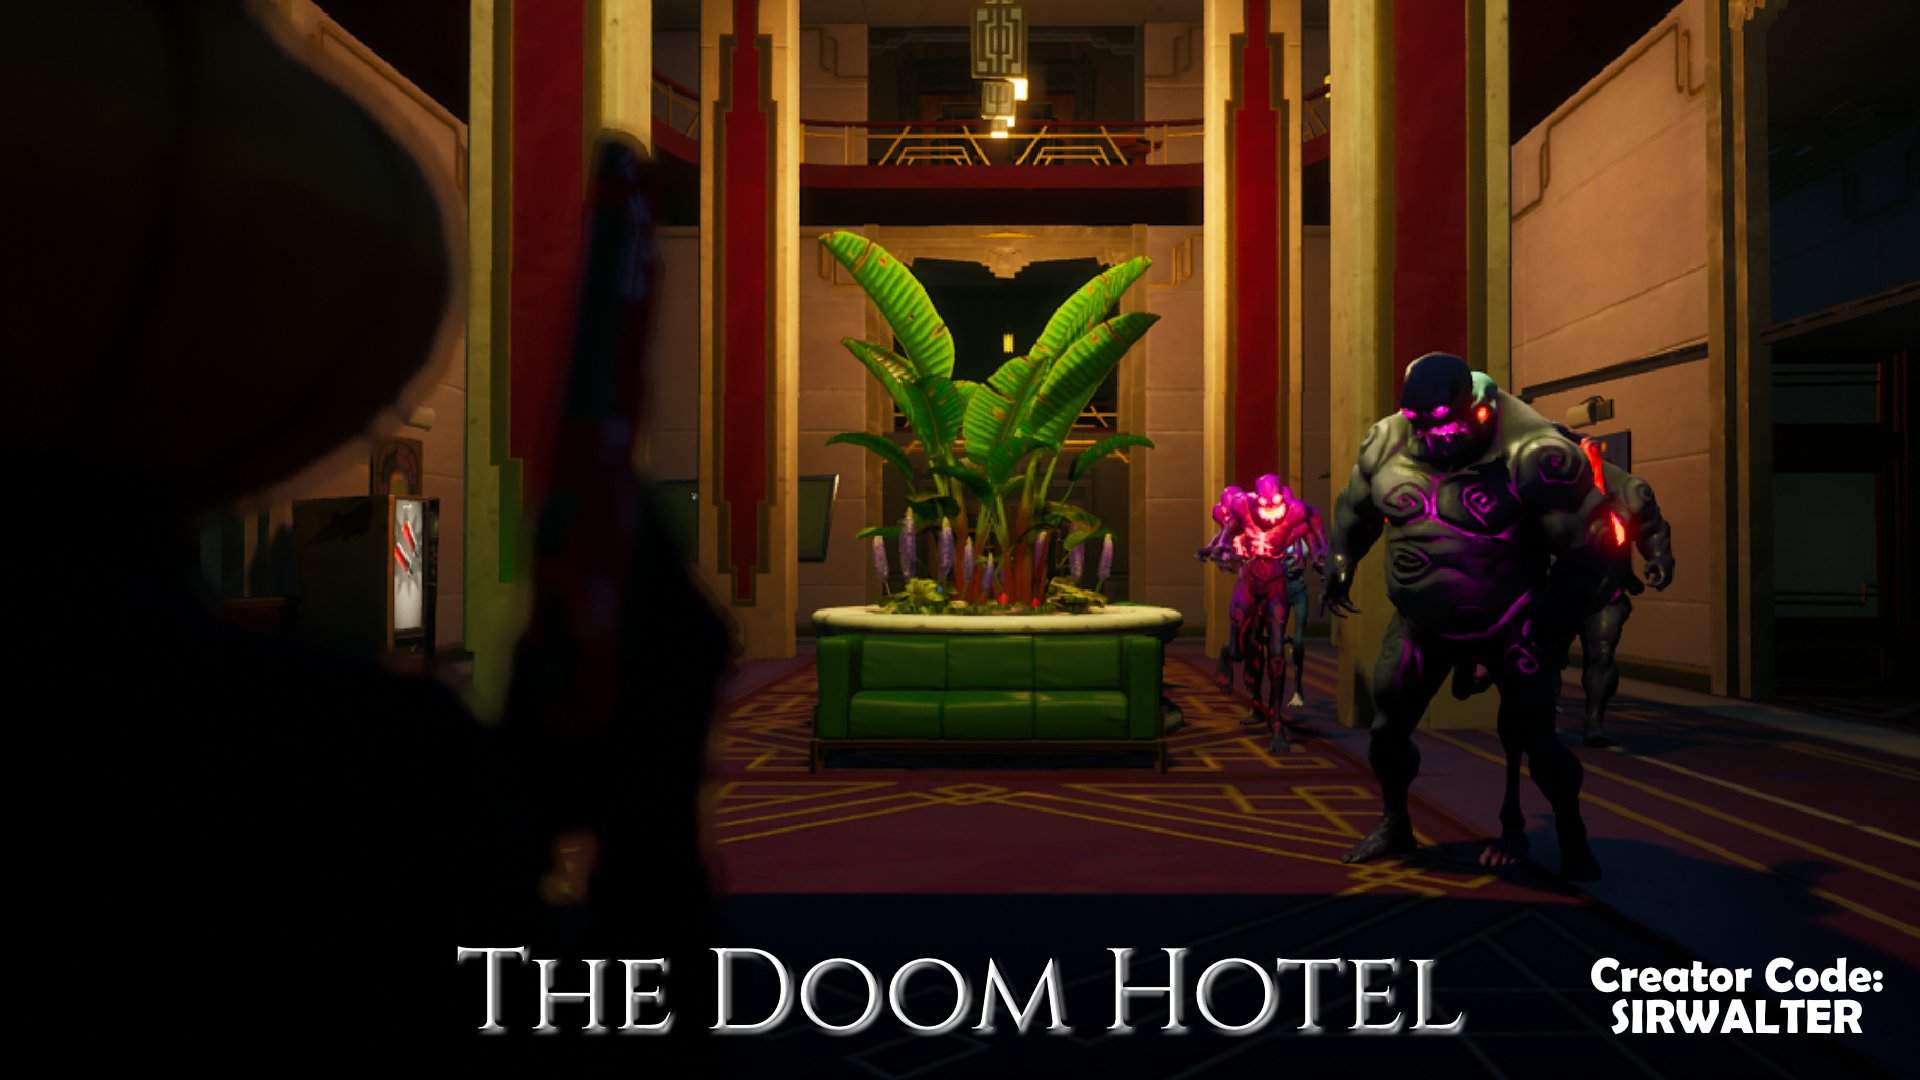 THE DOOM HOTEL